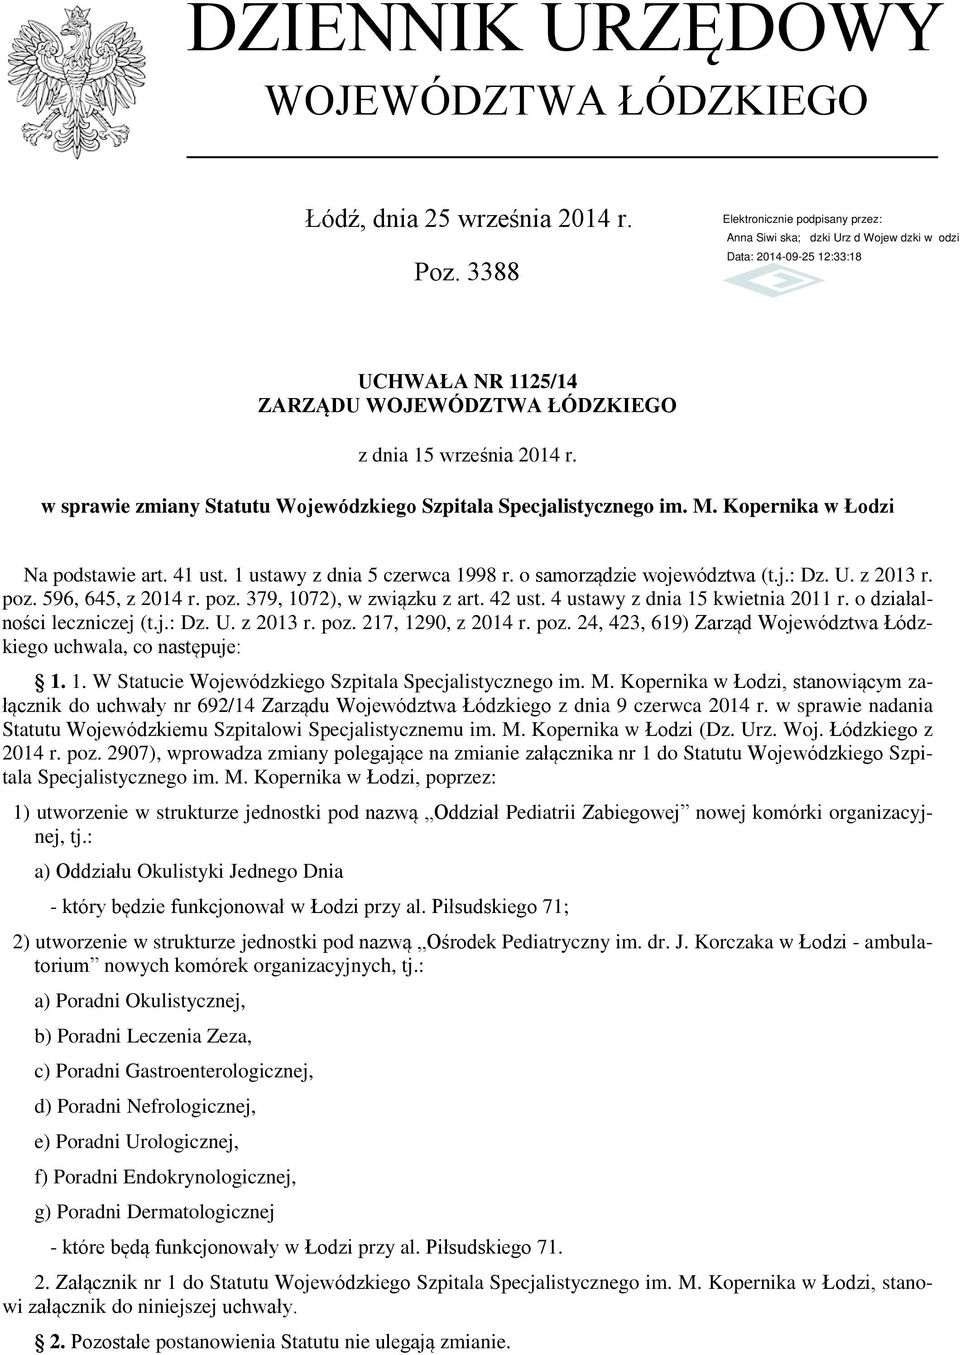 poz. 596, 645, z 2014 r. poz. 379, 1072), w związku z art. 42 ust. 4 ustawy z dnia 15 kwietnia 2011 r. o działalności leczniczej (t.j.: Dz. U. z 2013 r. poz. 217, 1290, z 2014 r. poz. 24, 423, 619) Zarząd Województwa Łódzkiego uchwala, co następuje: 1.